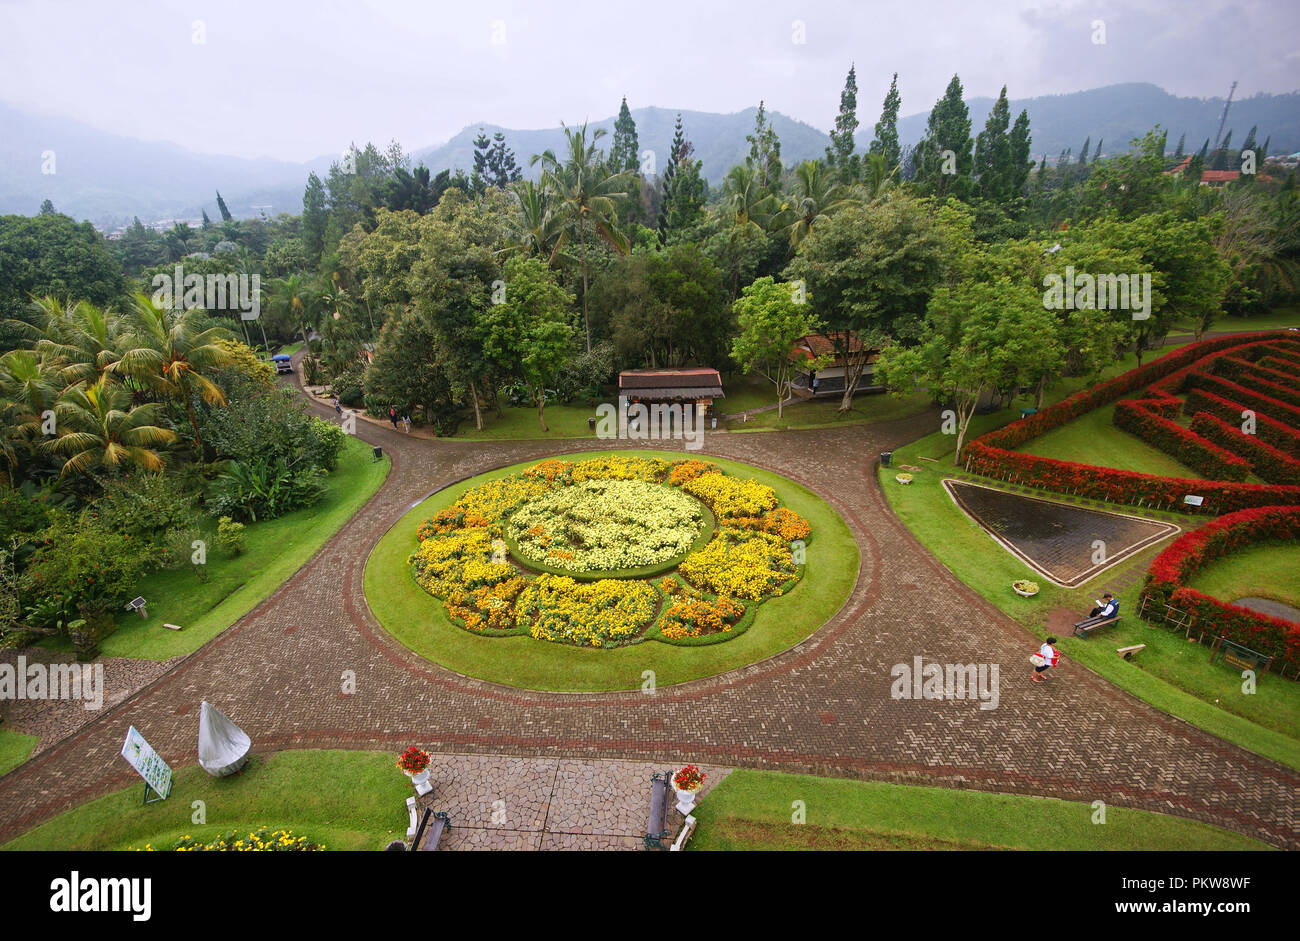 Taman Bunga Nusantara Garden Park, Cipanas, West Java, Indonesia Stock Photo